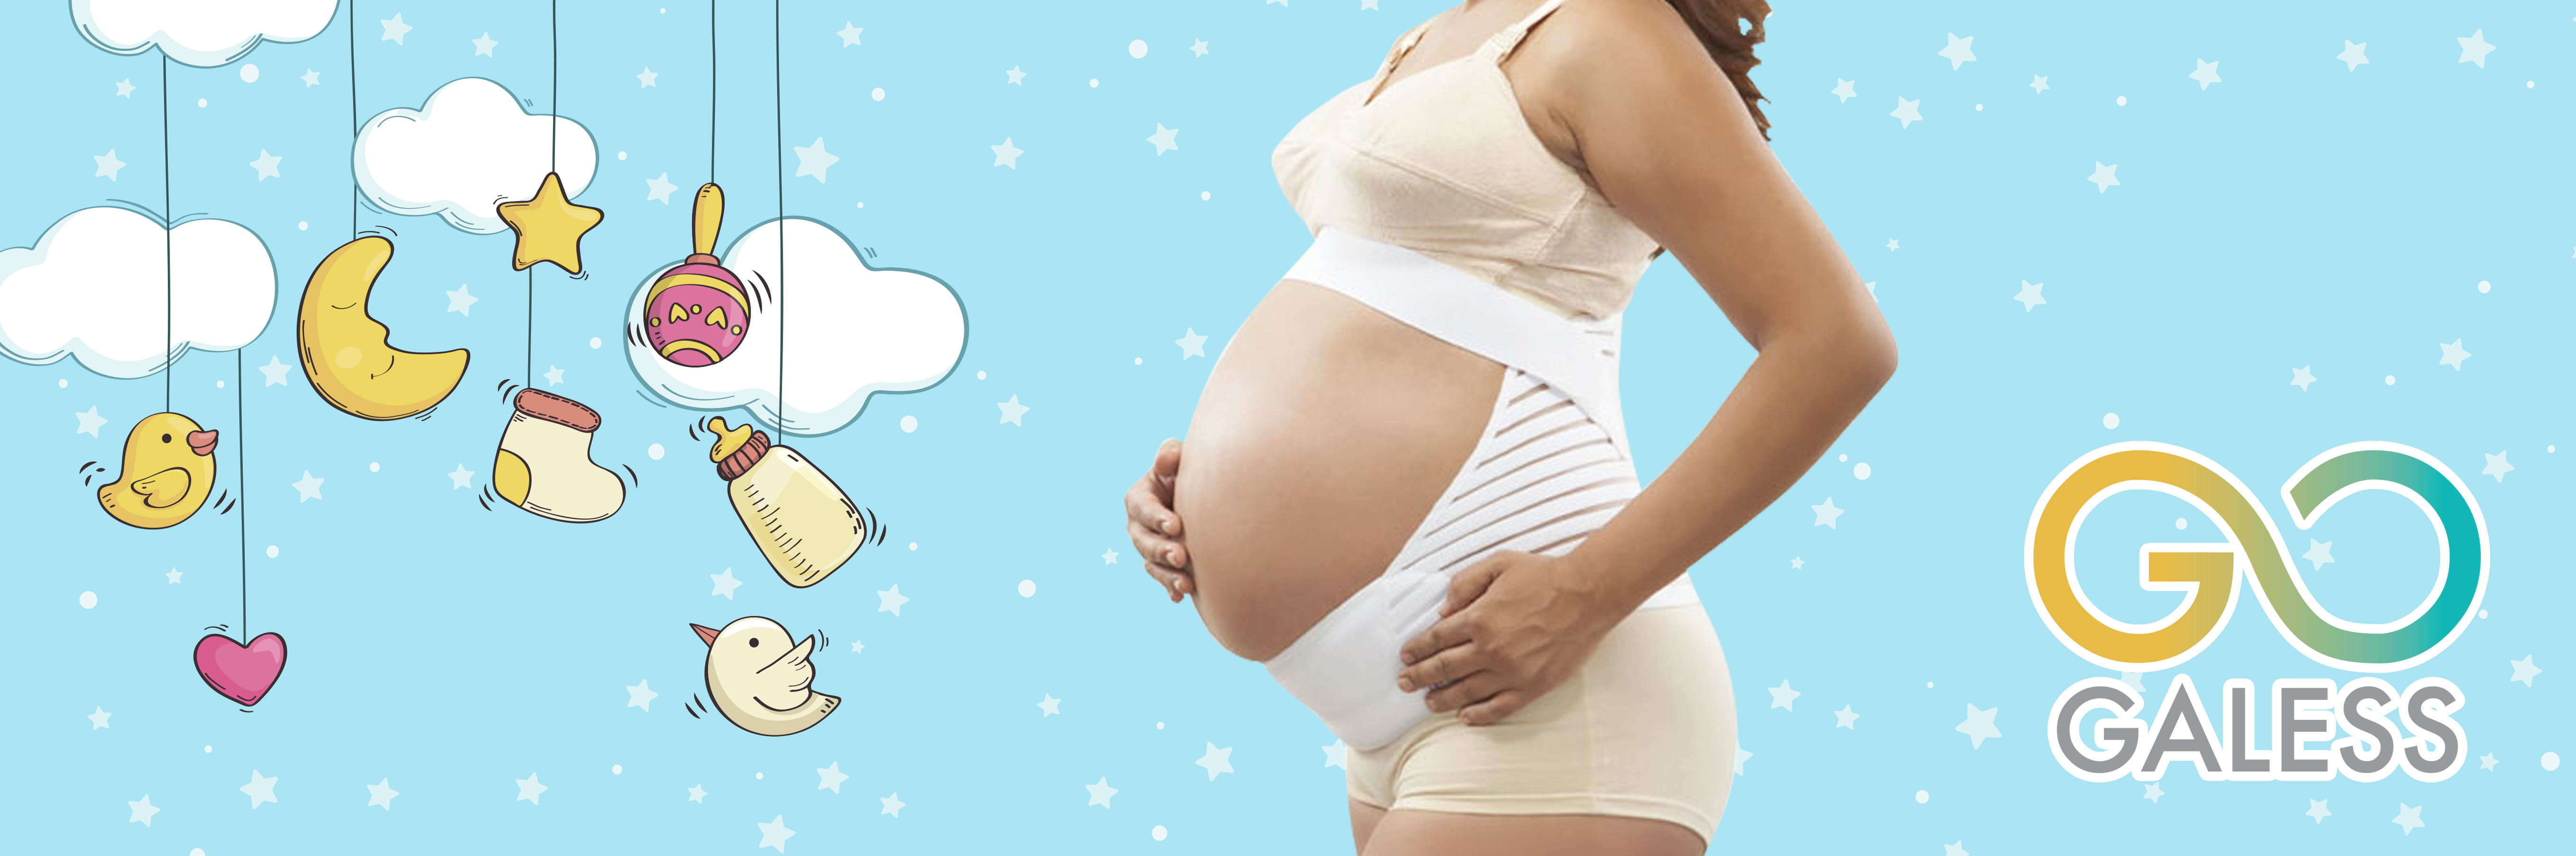 7 beneficios de usar faja en el embarazo - Eres Mamá